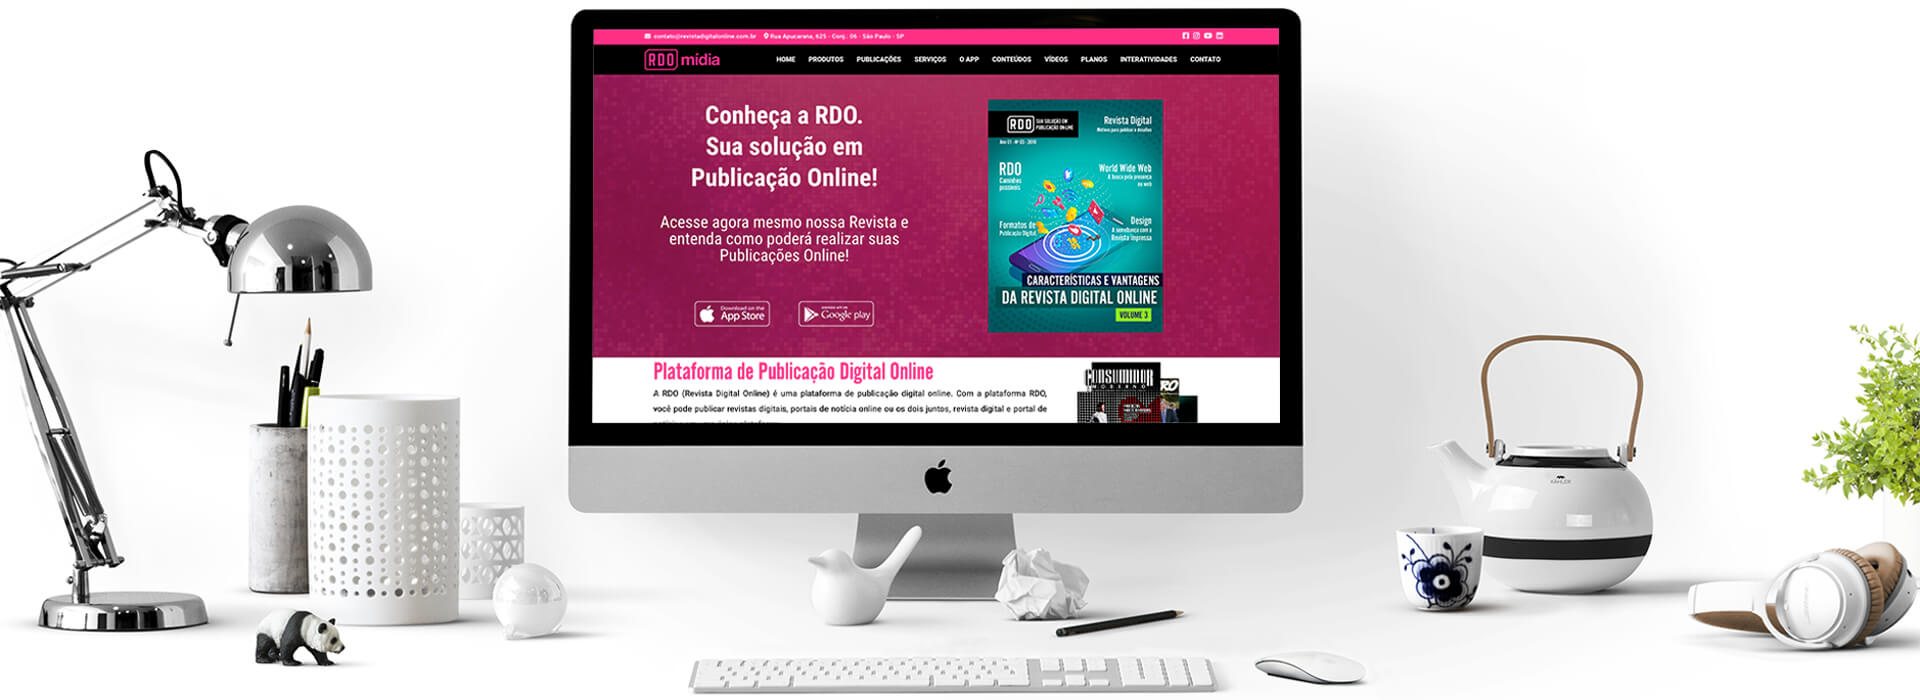 Revista Digital On-line: Computador mostrando o site da RDO Mídia e objetos sobre a mesa